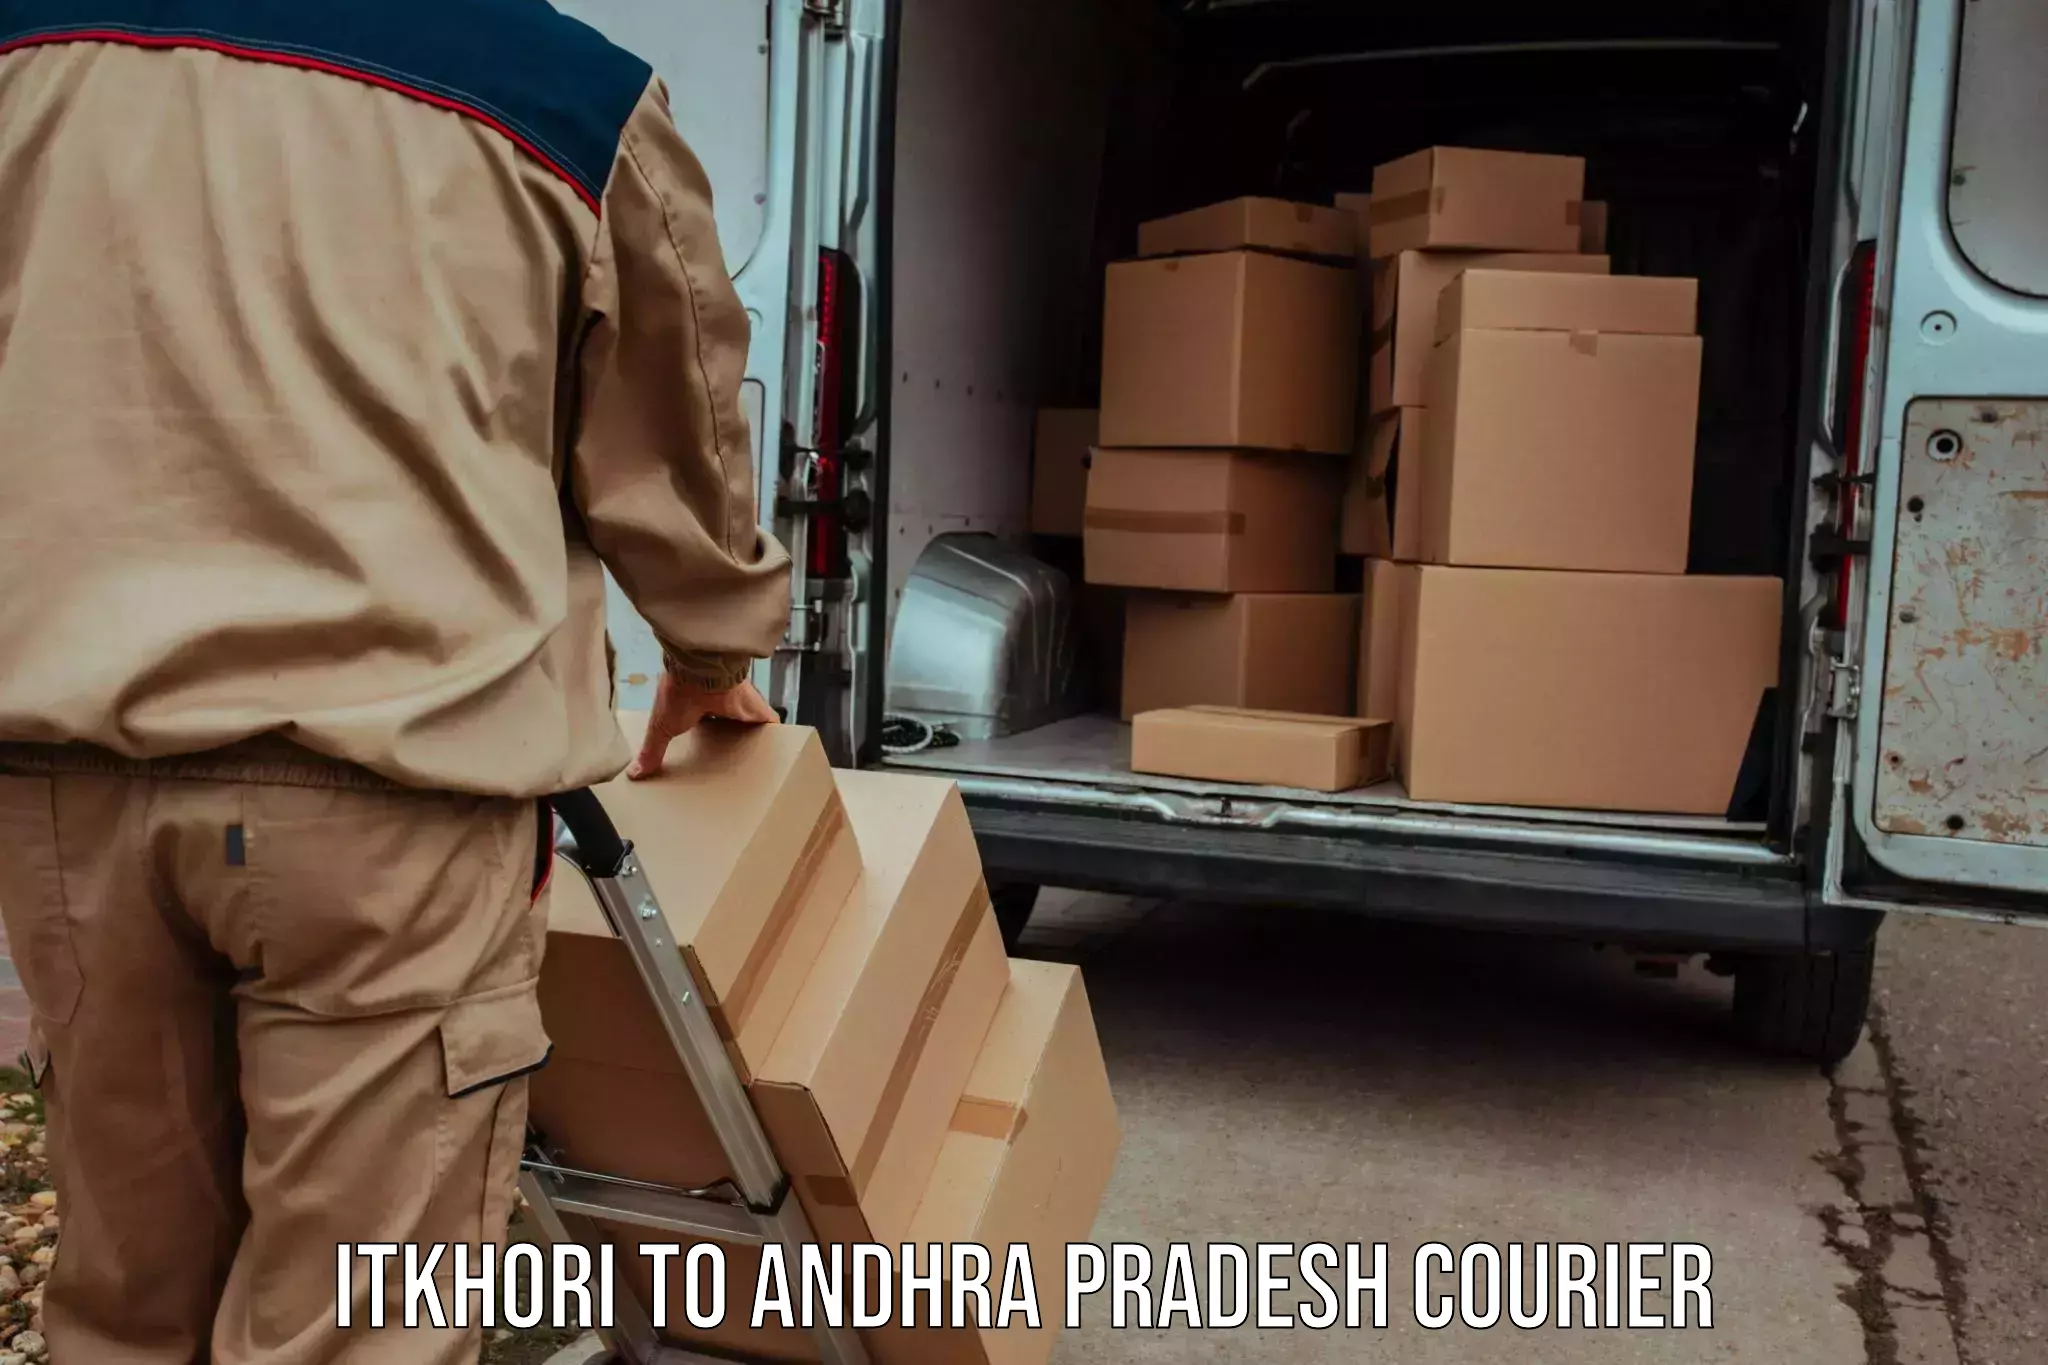 User-friendly courier app Itkhori to Andhra Pradesh